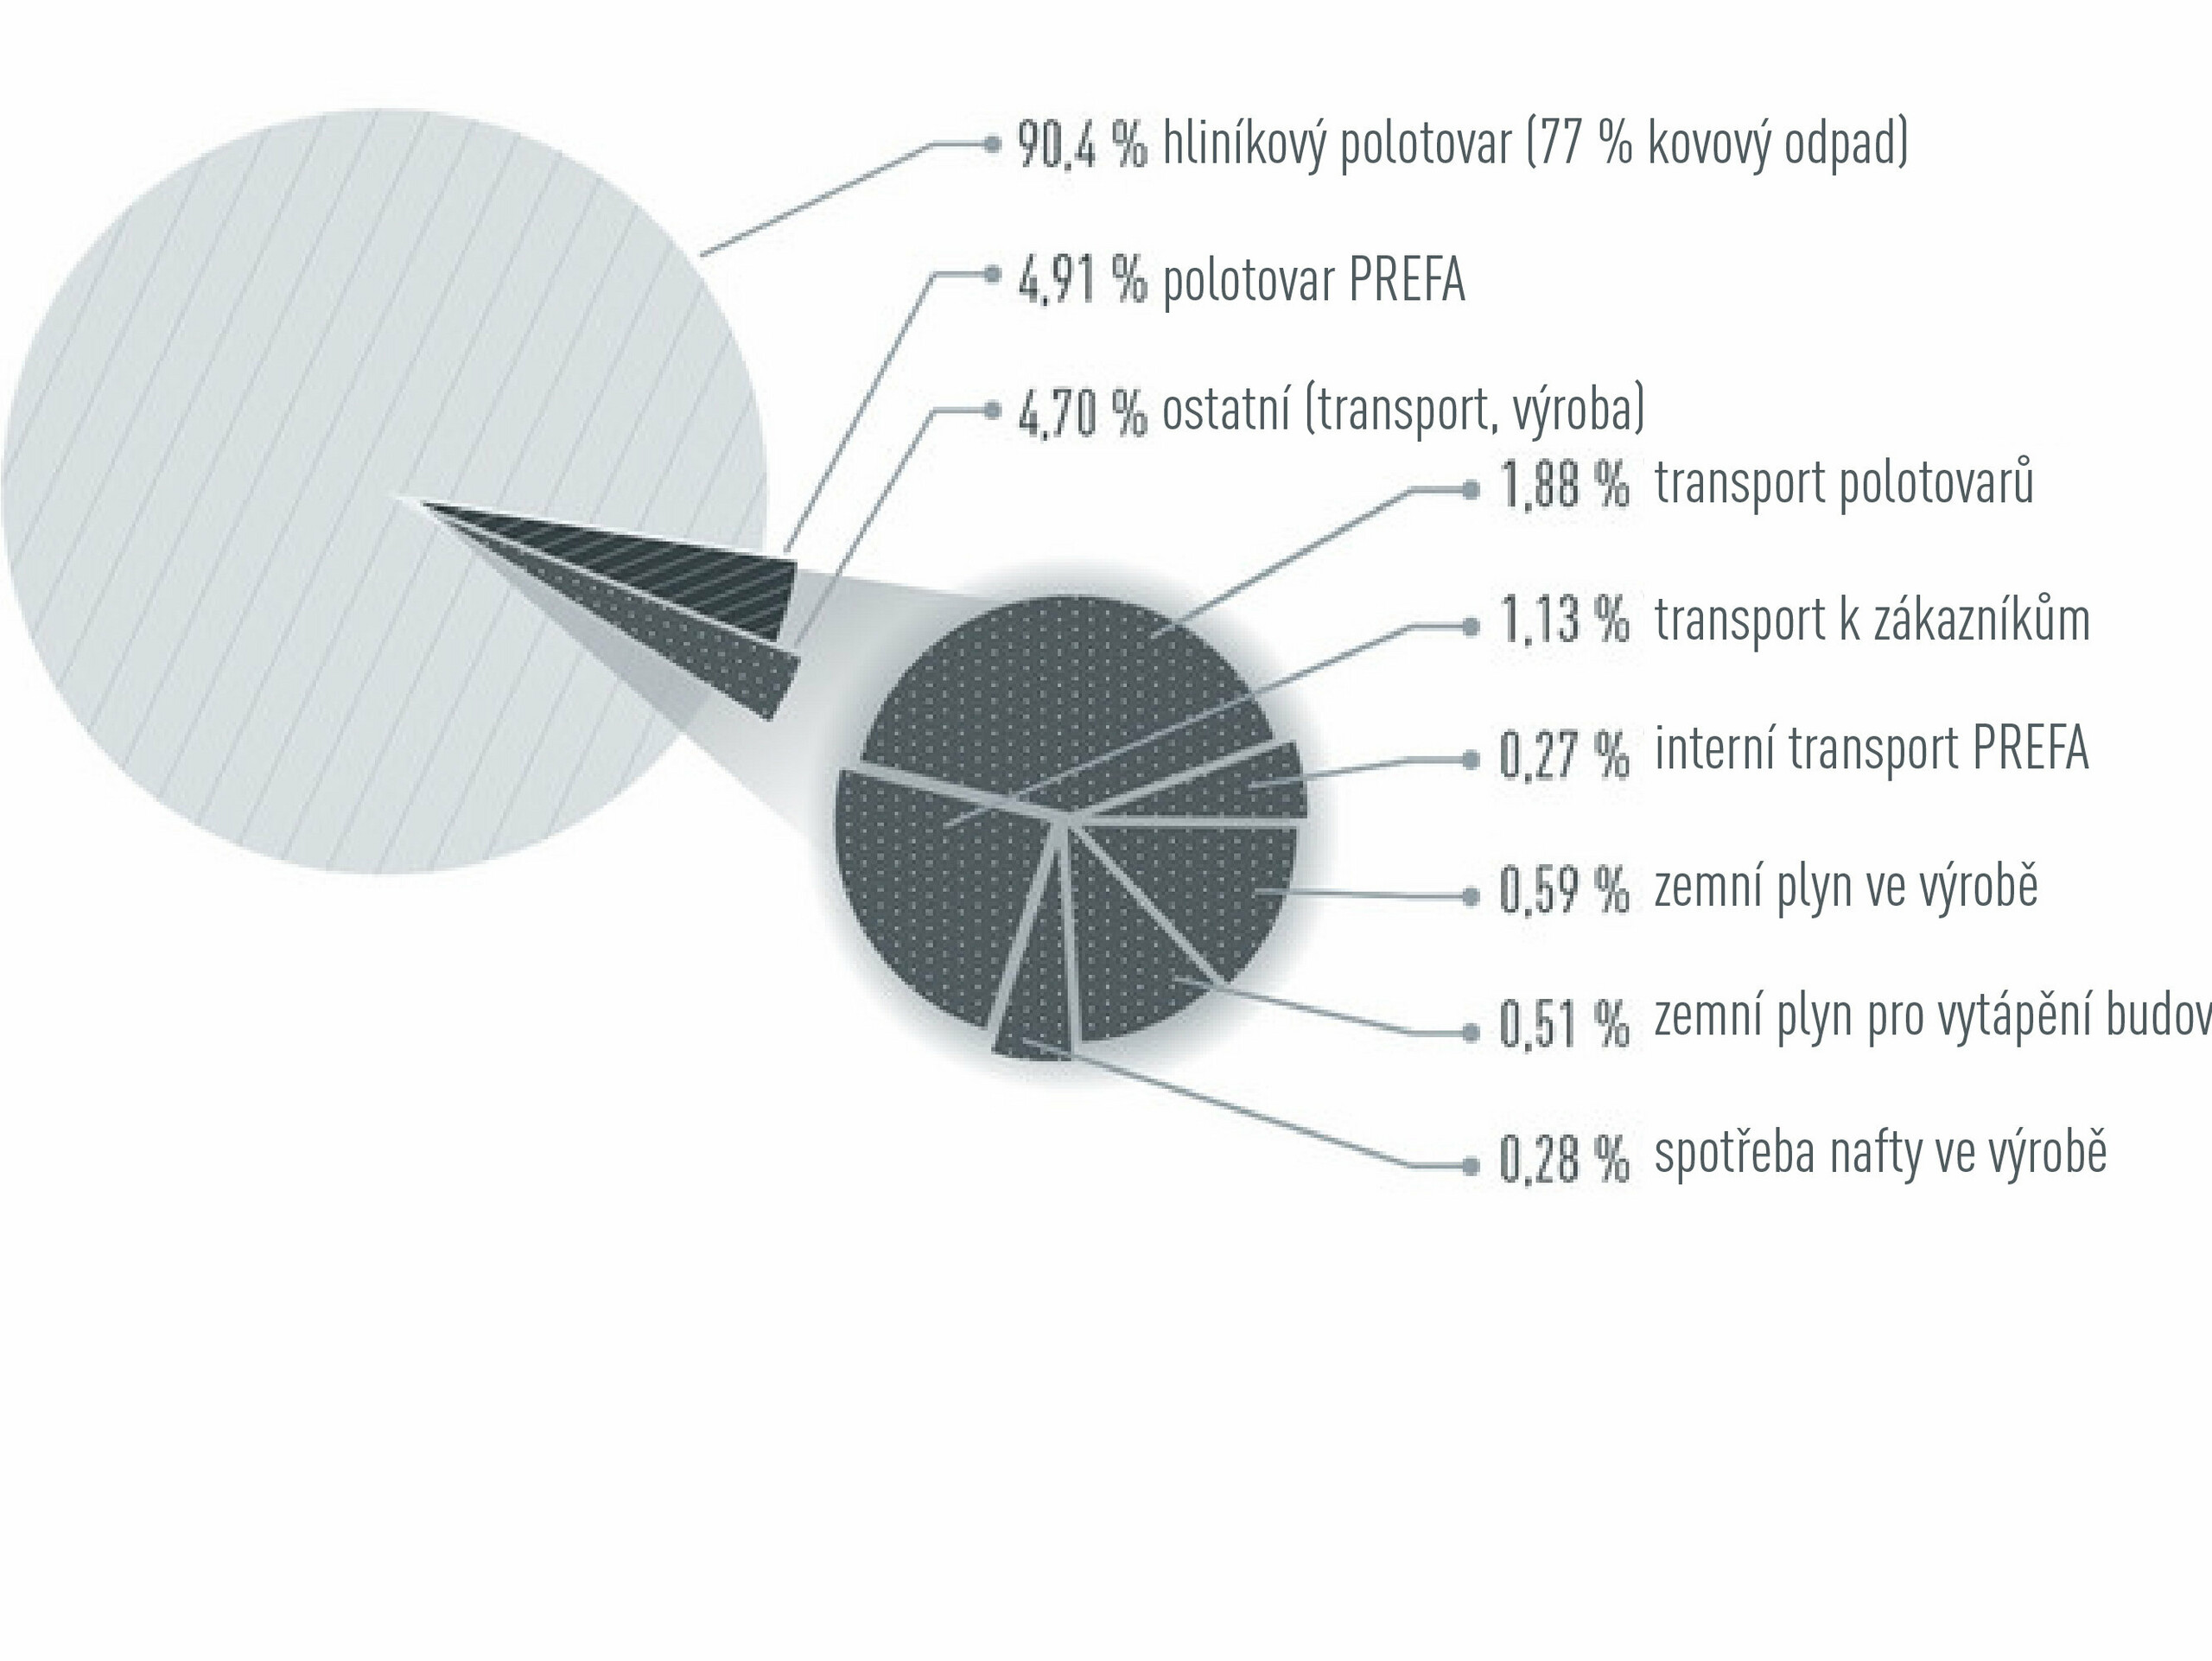 Grafika k rozdělení emisí CO2 PREFA: 90,4 % hliníkový polotovar, 4,91 % polotovar PREFA, 4,70 ostatní (transport, výroba)